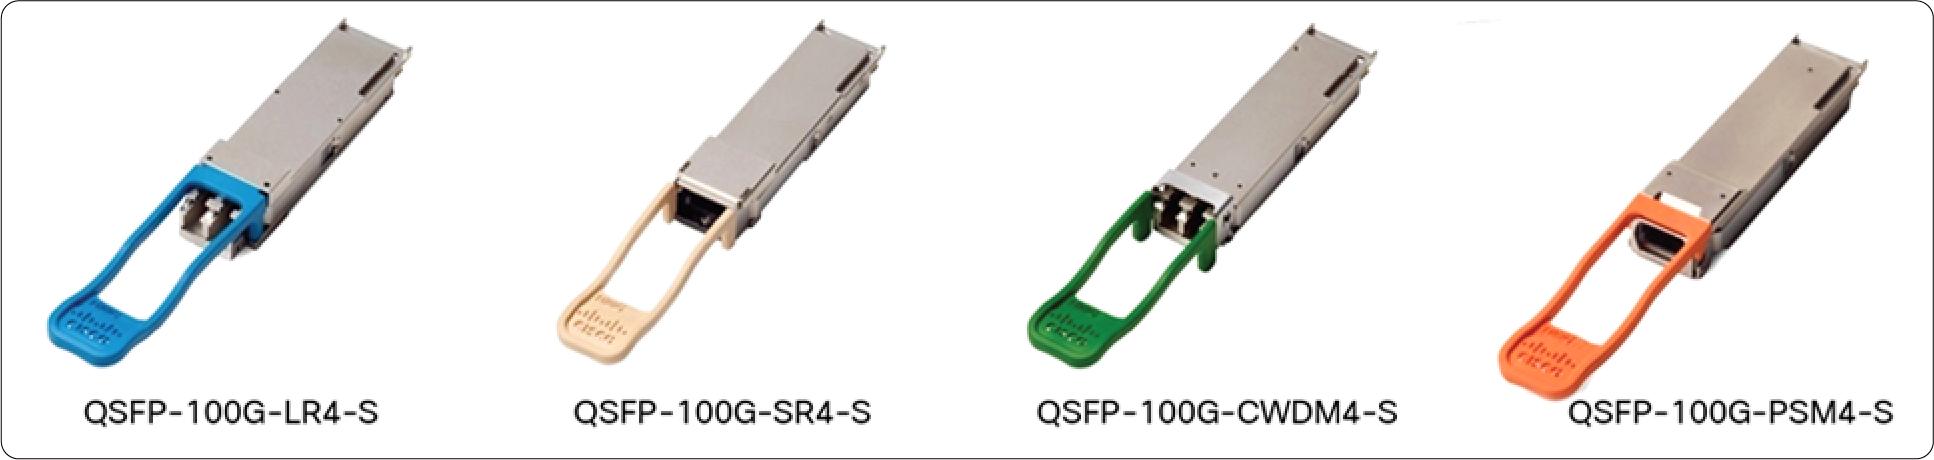 QSFP-100G-CU2M Cisco 100 Gigabit Modules - Cisco 100GBASE QSFP Modules - 2